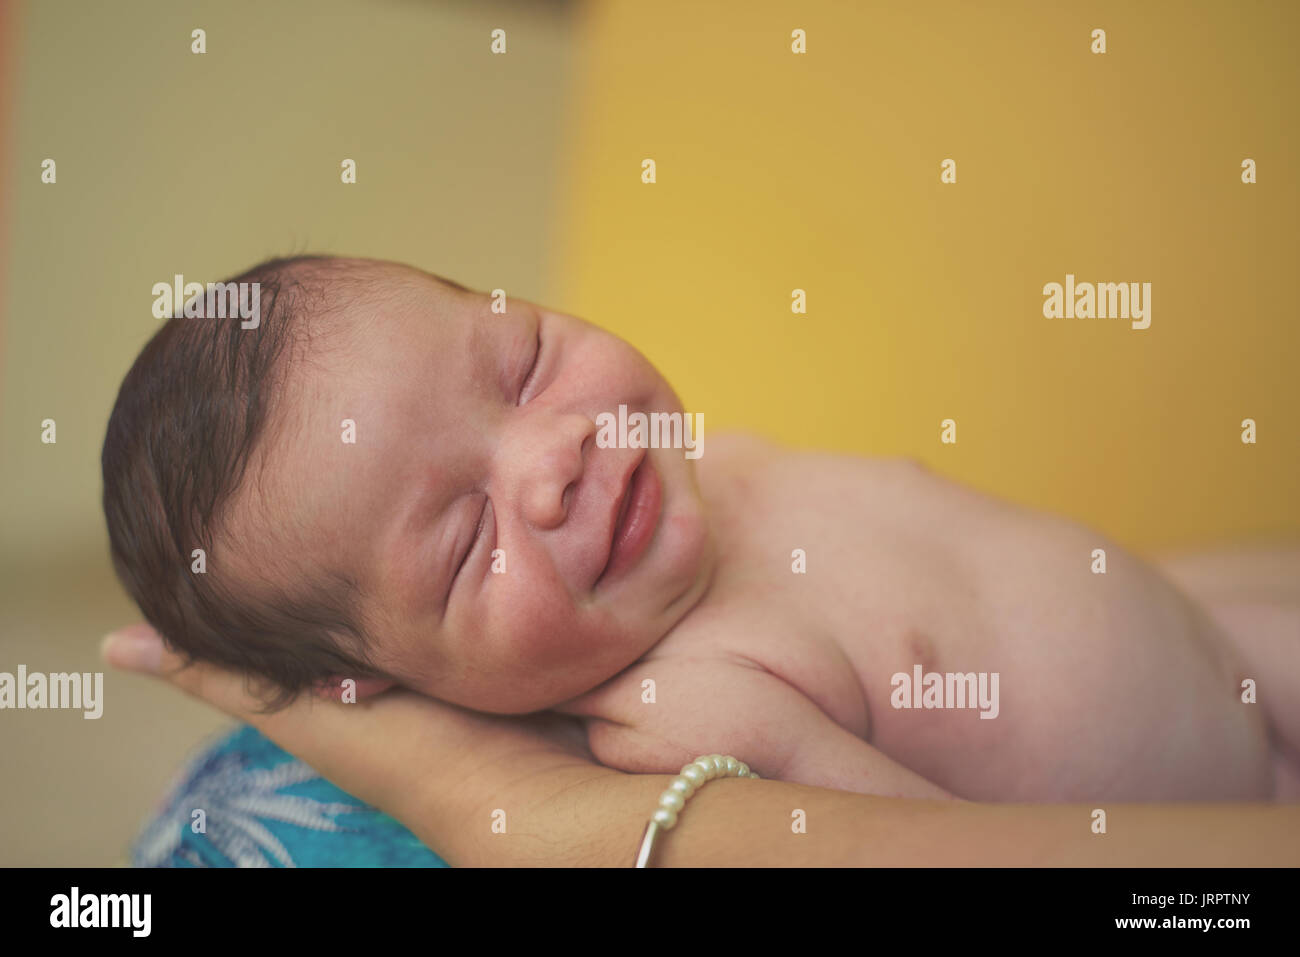 Smiling nouveau né bébé dormir dans les mains des parents Banque D'Images